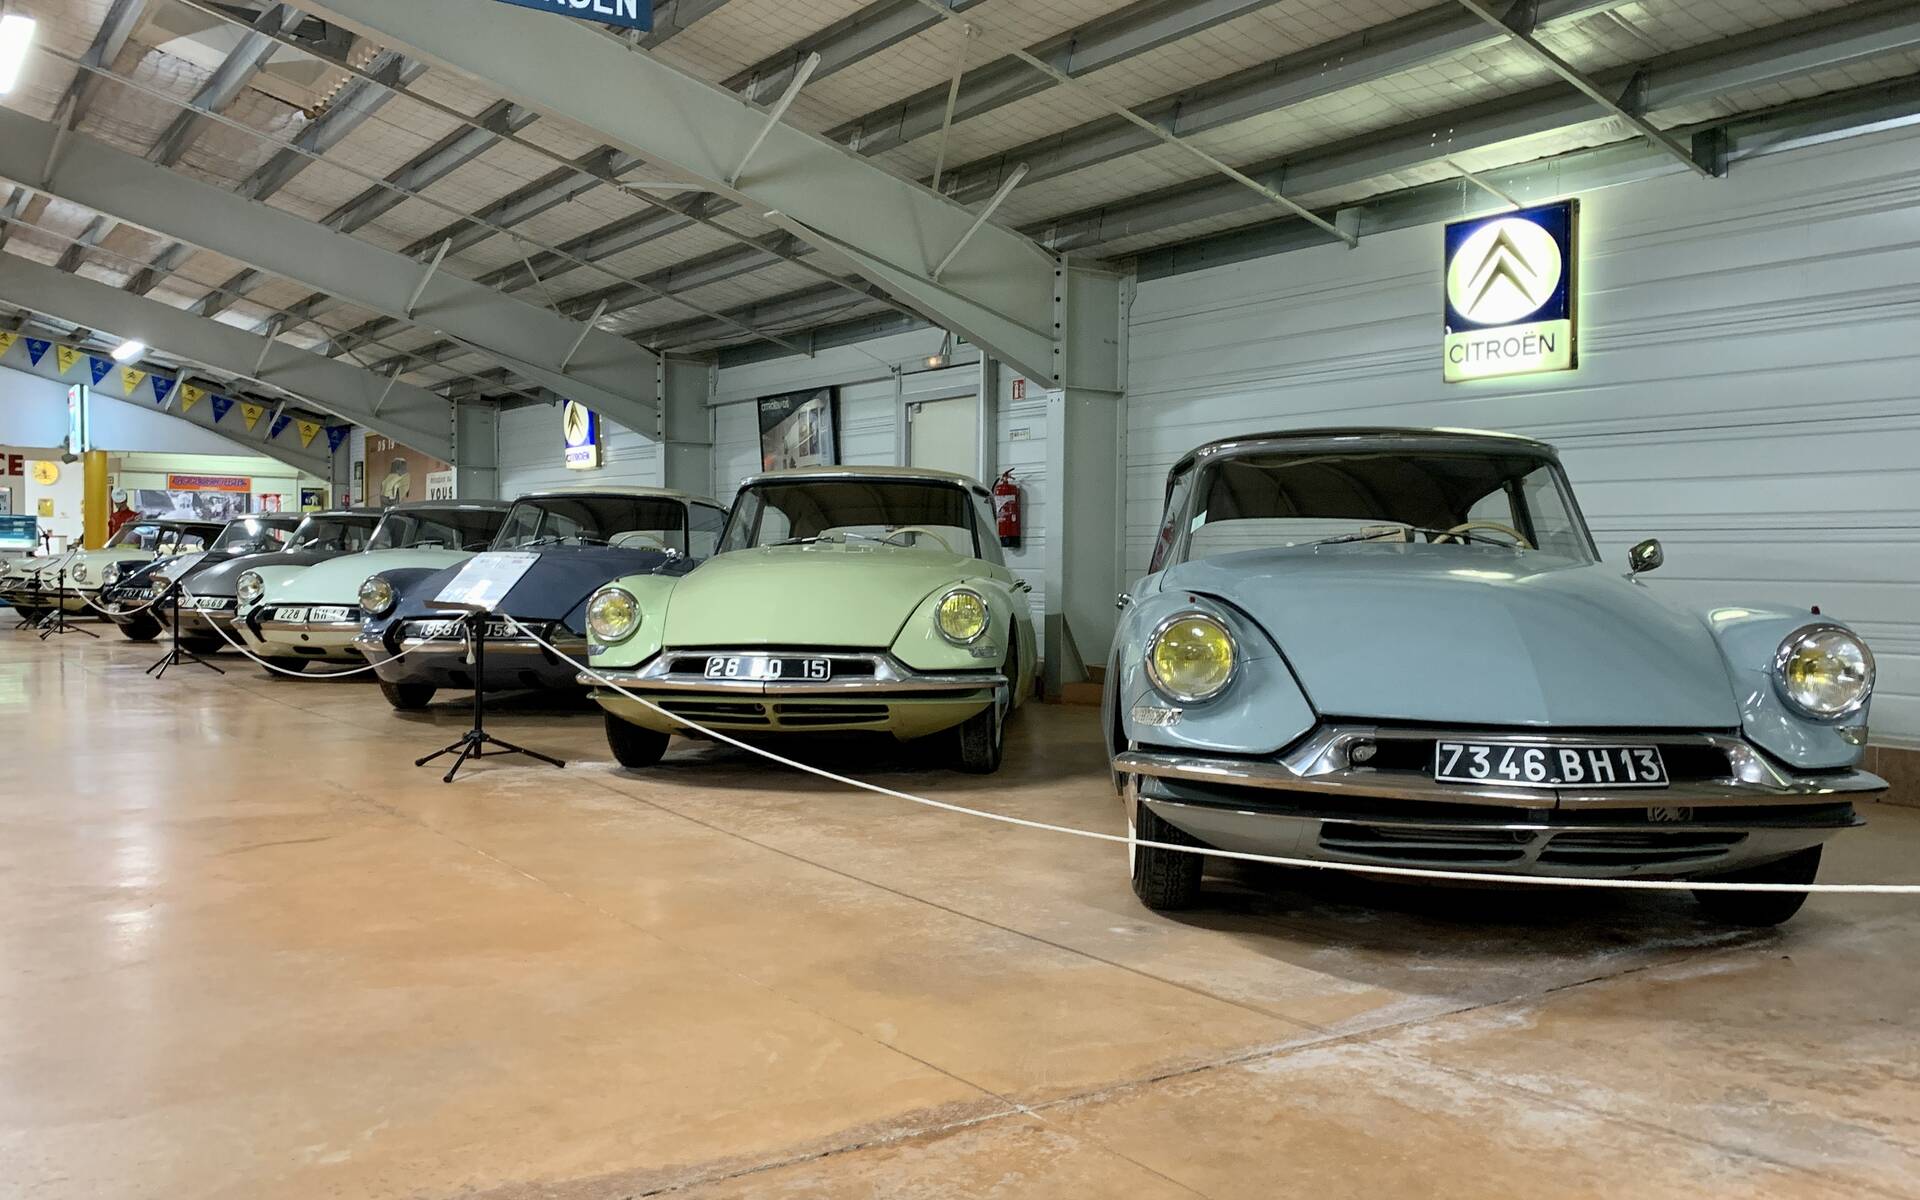 32 - Photos: plus de 100 Citroën d'exception réunies dans un musée en France 543090-photos-plus-de-100-citroen-d-exception-reunies-dans-un-musee-en-france